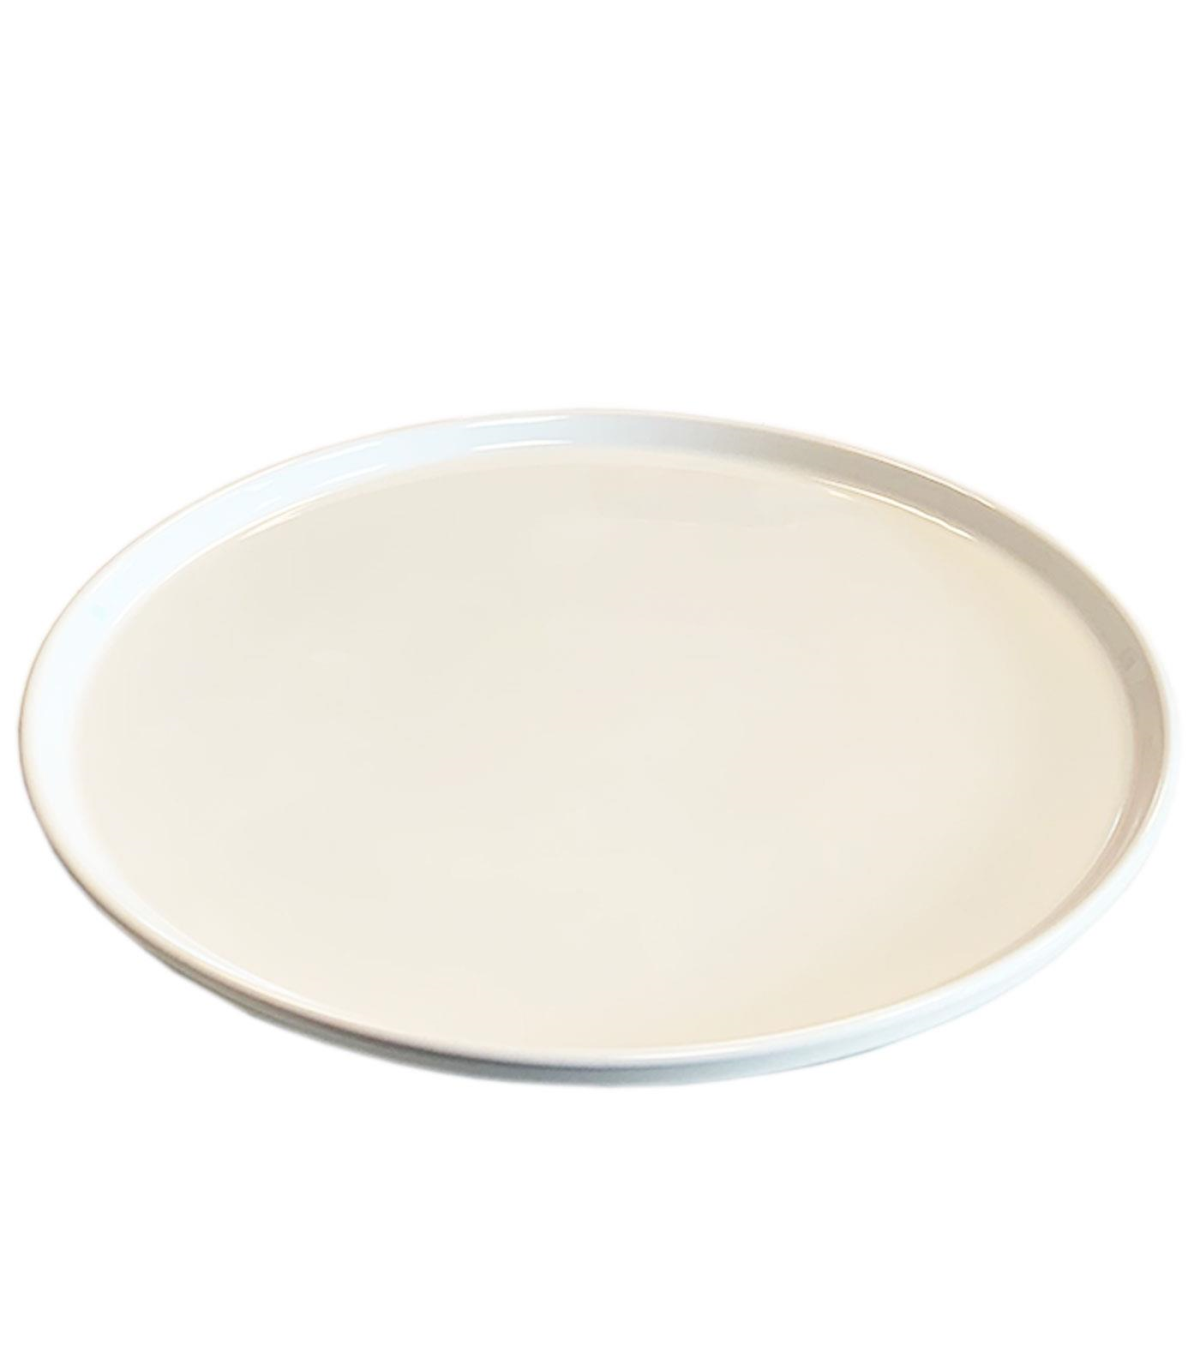 Tradineur - Plato de pizza redondo de cerámica lisa, bandeja para servir  comida, ligero y elegante, Ø33 cm, color aleatorio